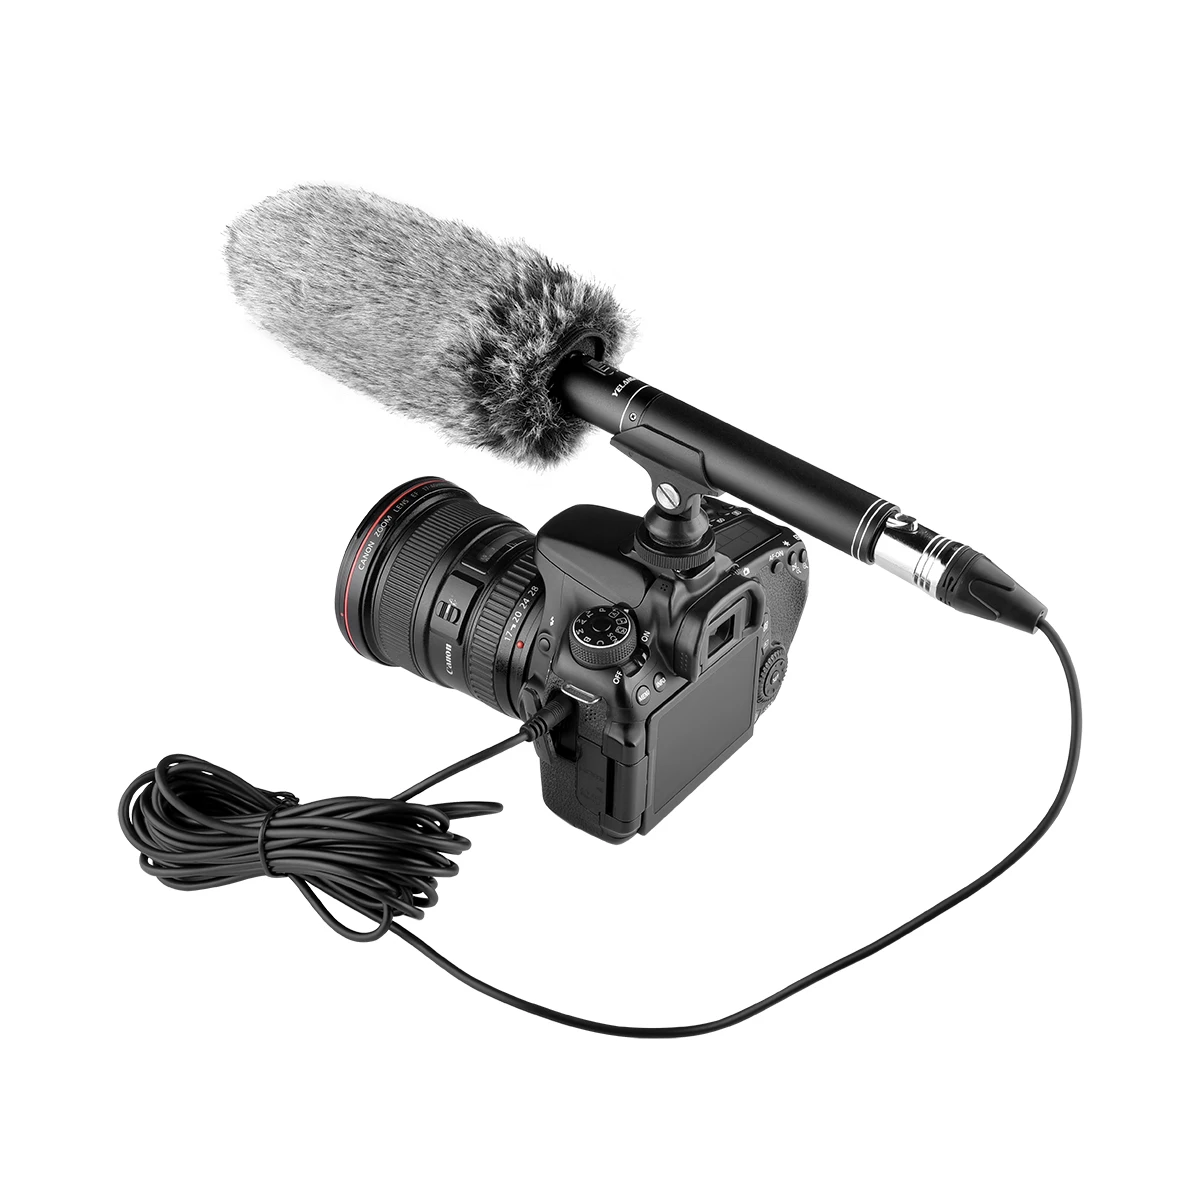 

TRAVOR Профессиональный 3,5/6,5 мм интервью микрофон направленный конденсаторный микрофон для Мобильный телефон DSLR DV видеокамеры Видео Камера